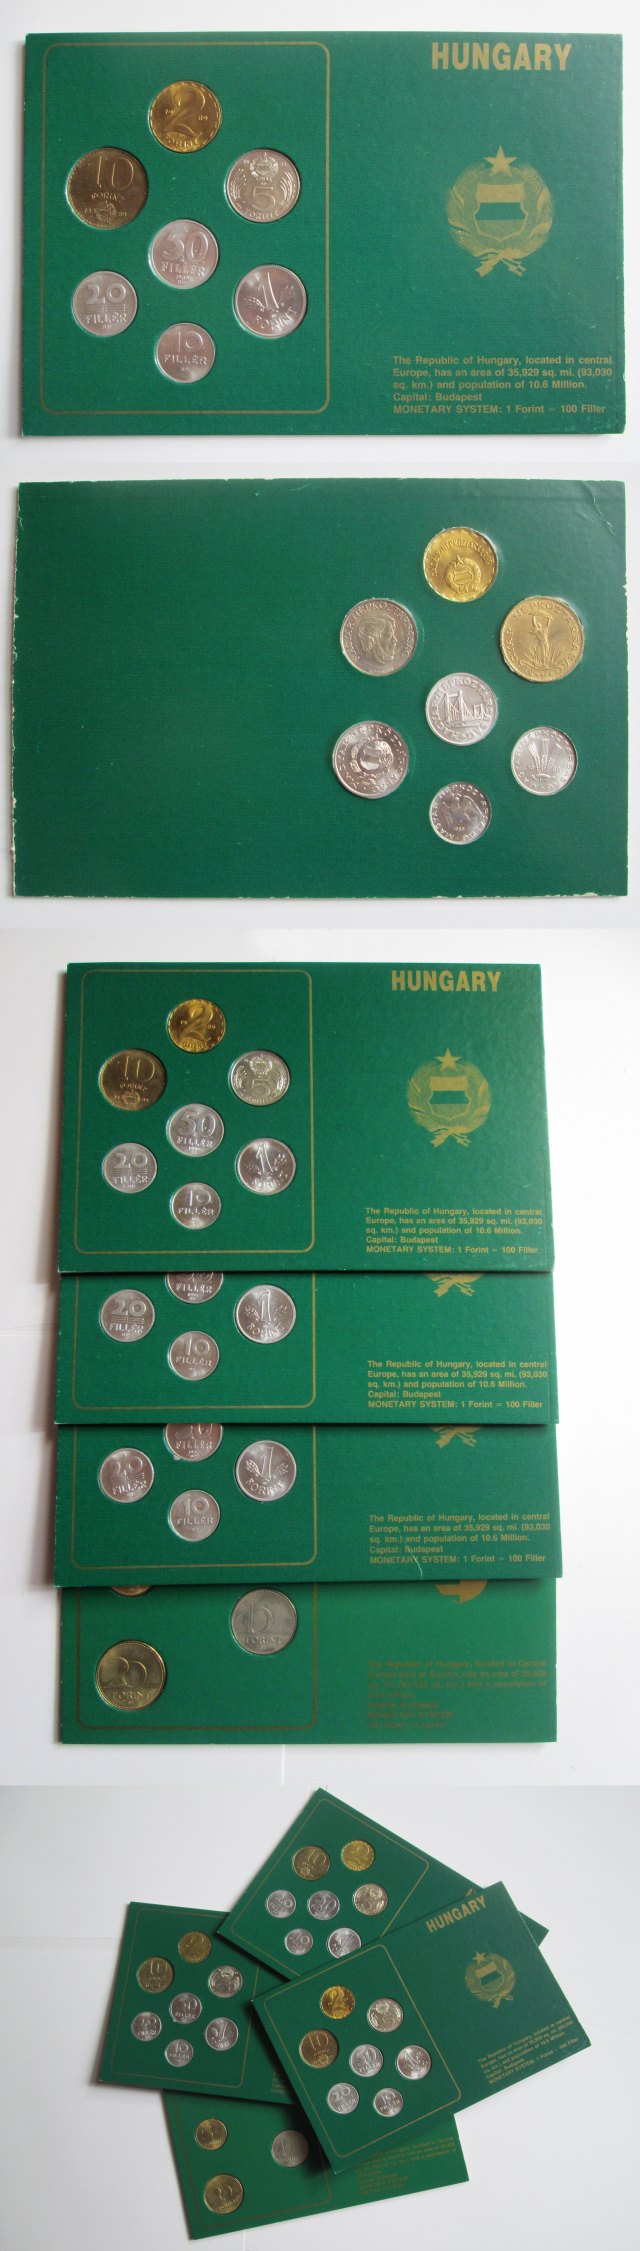 Republic of Hungary 1983-1989